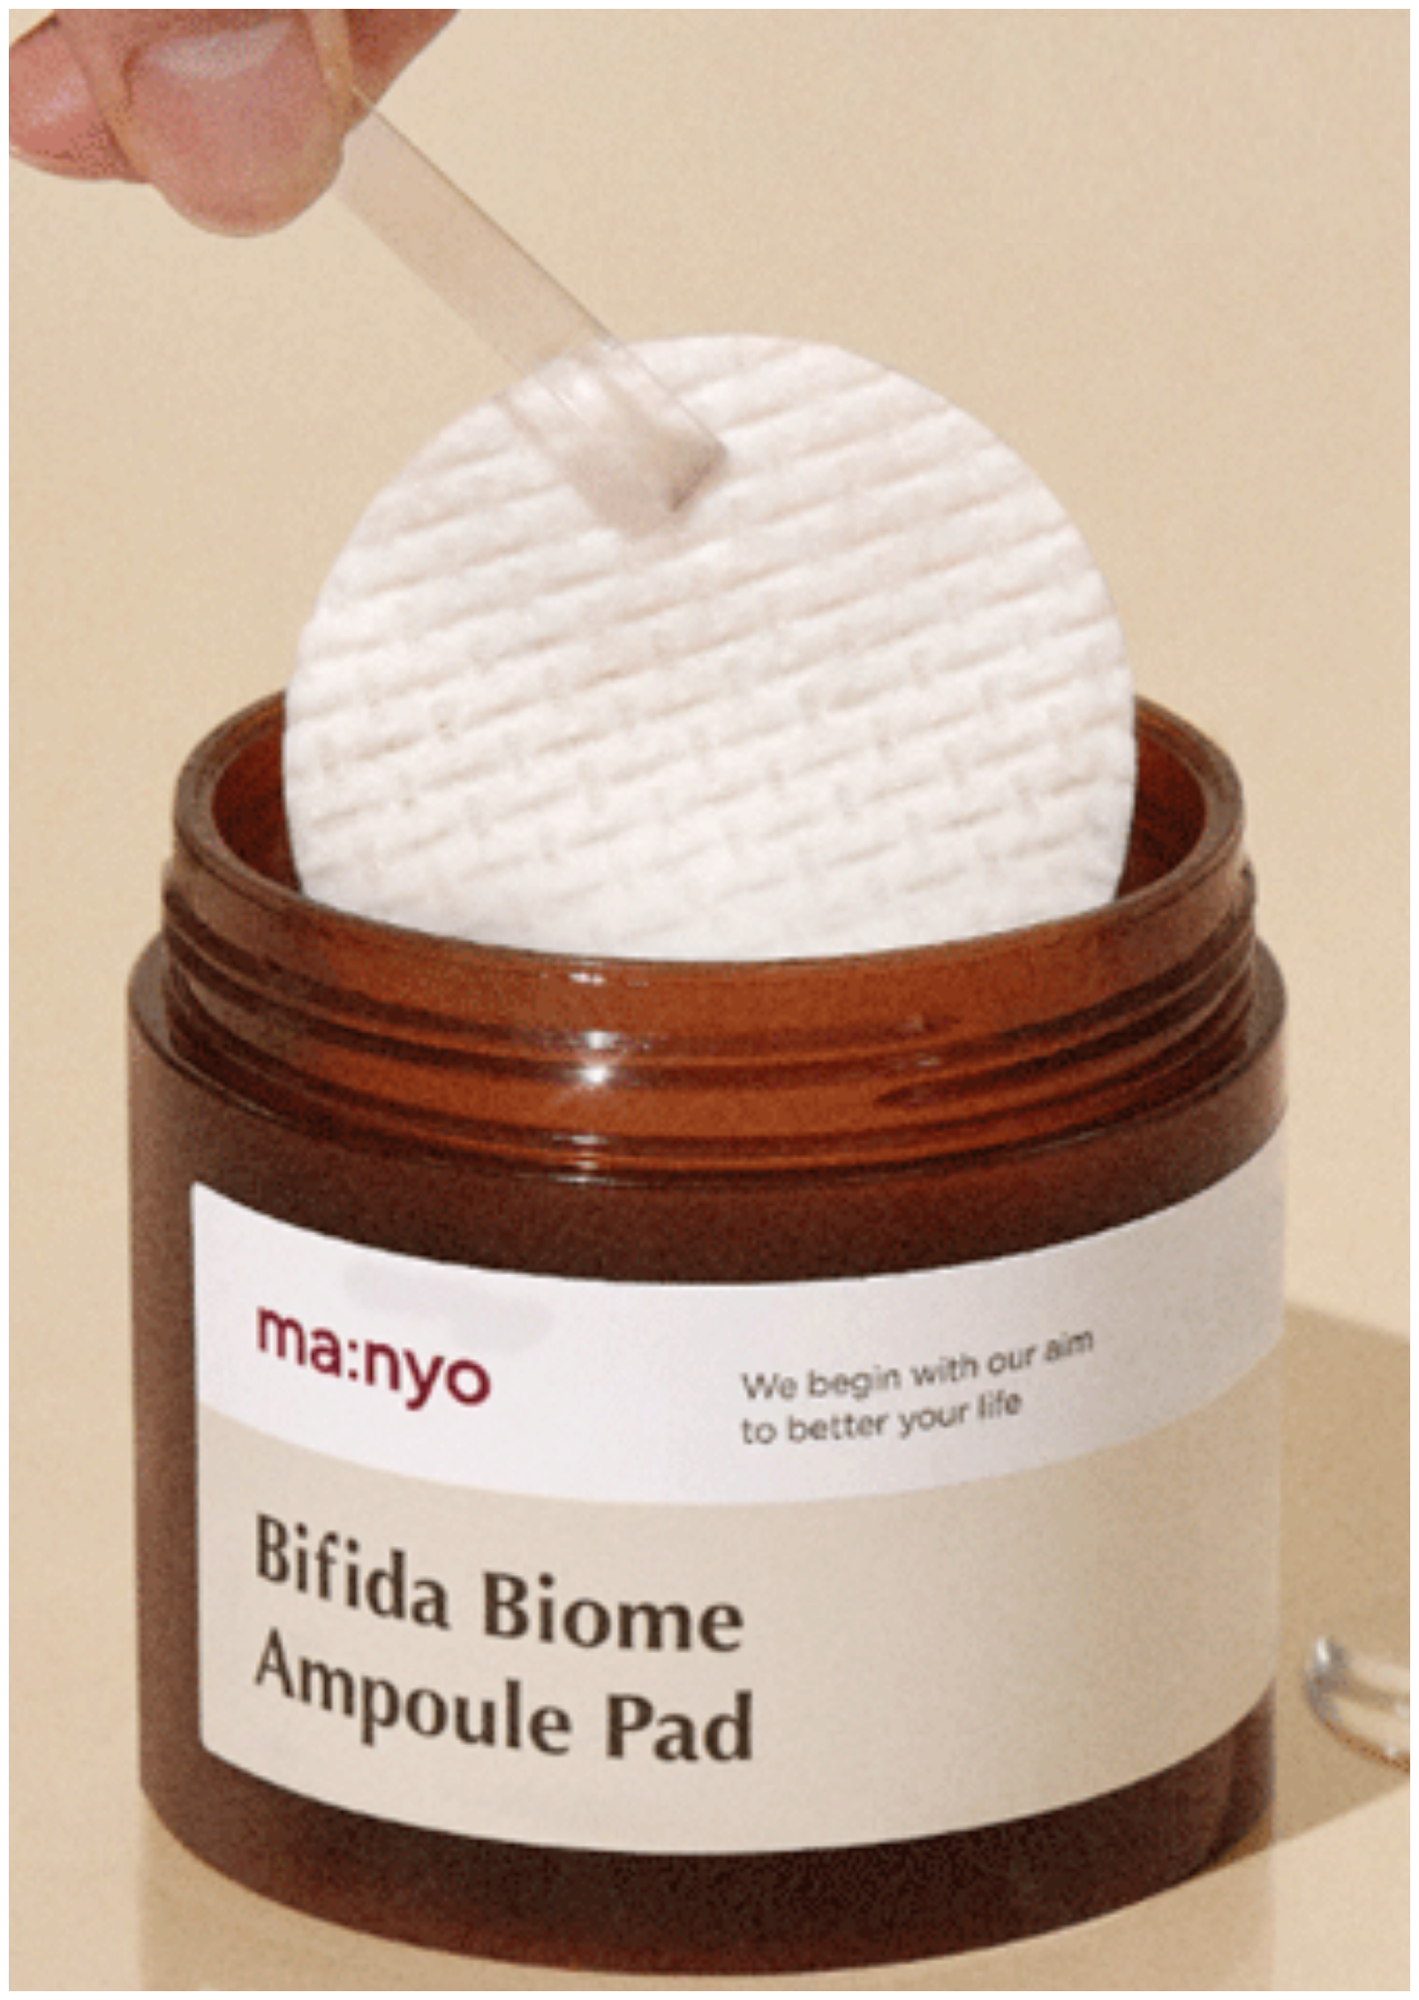 Пэды для лица, с бифидокомплексом Manyo Bifida Biome Ampoule Pad (70 шт/150 ml), сыворотка для лица, корейская косметика, омоложение лица